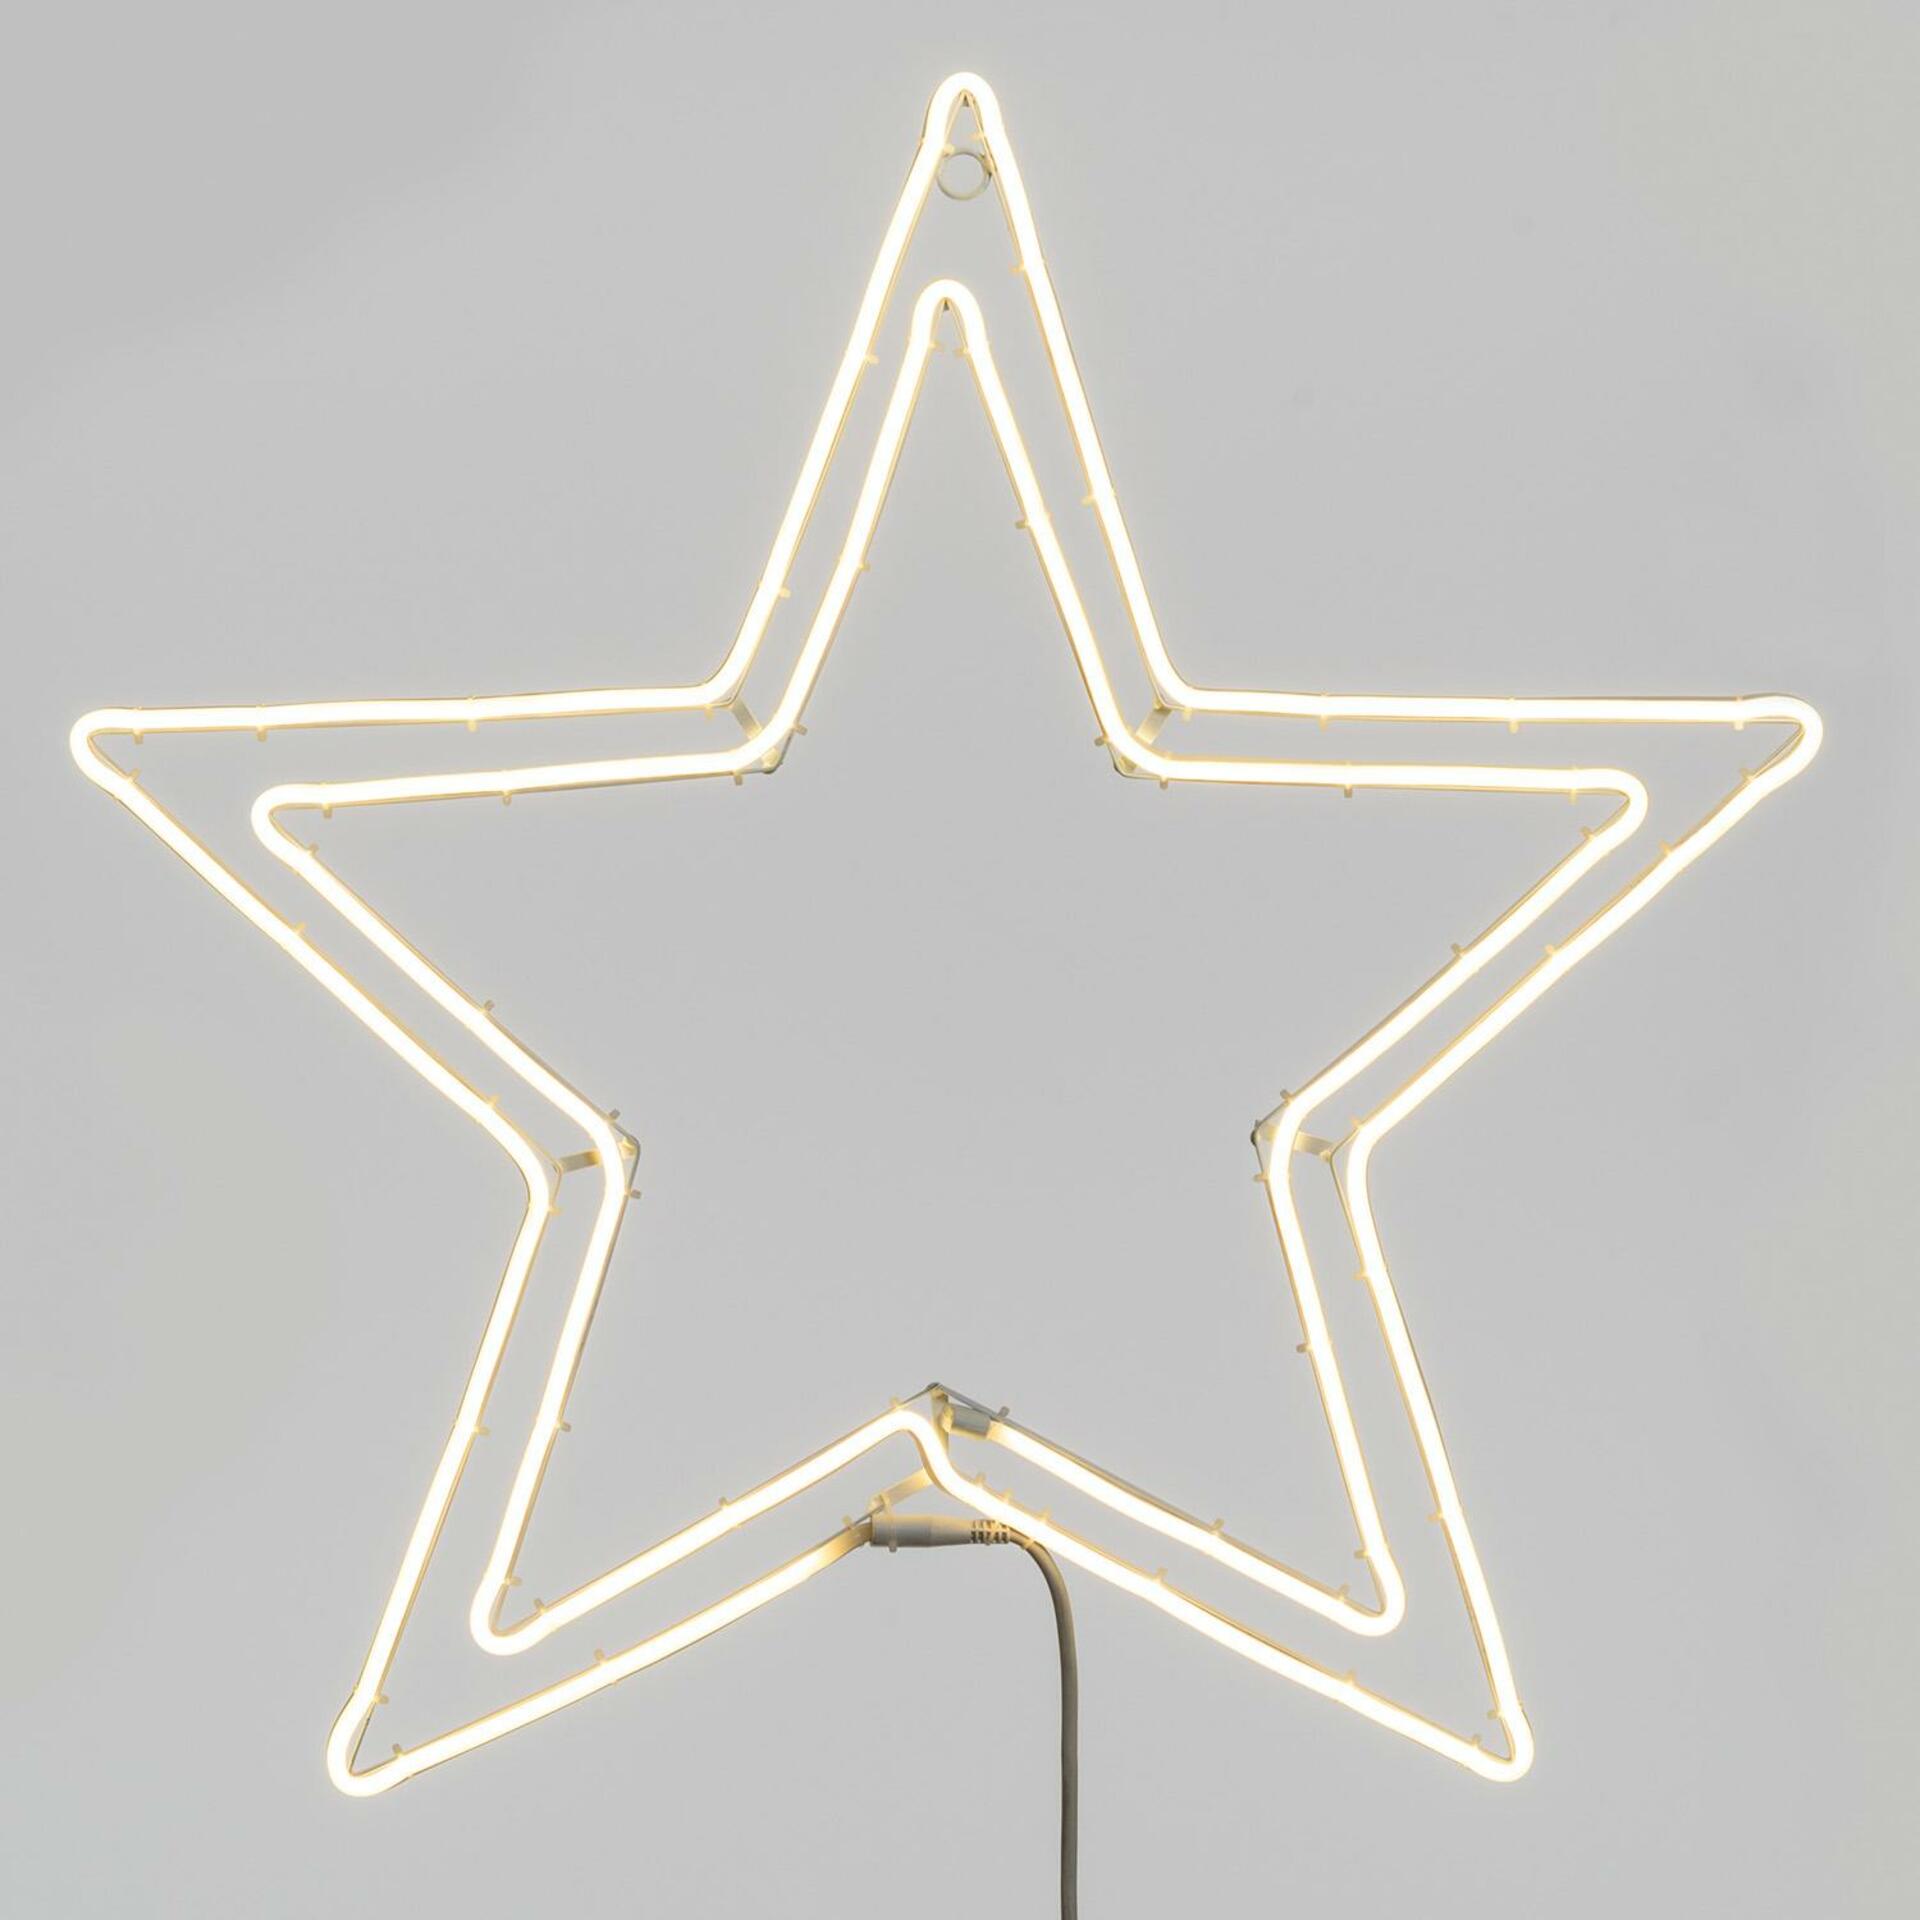 Xmas King XmasKing LED neon motiv hvězda průměr 75cm, 230V venkovní, teplá bílá